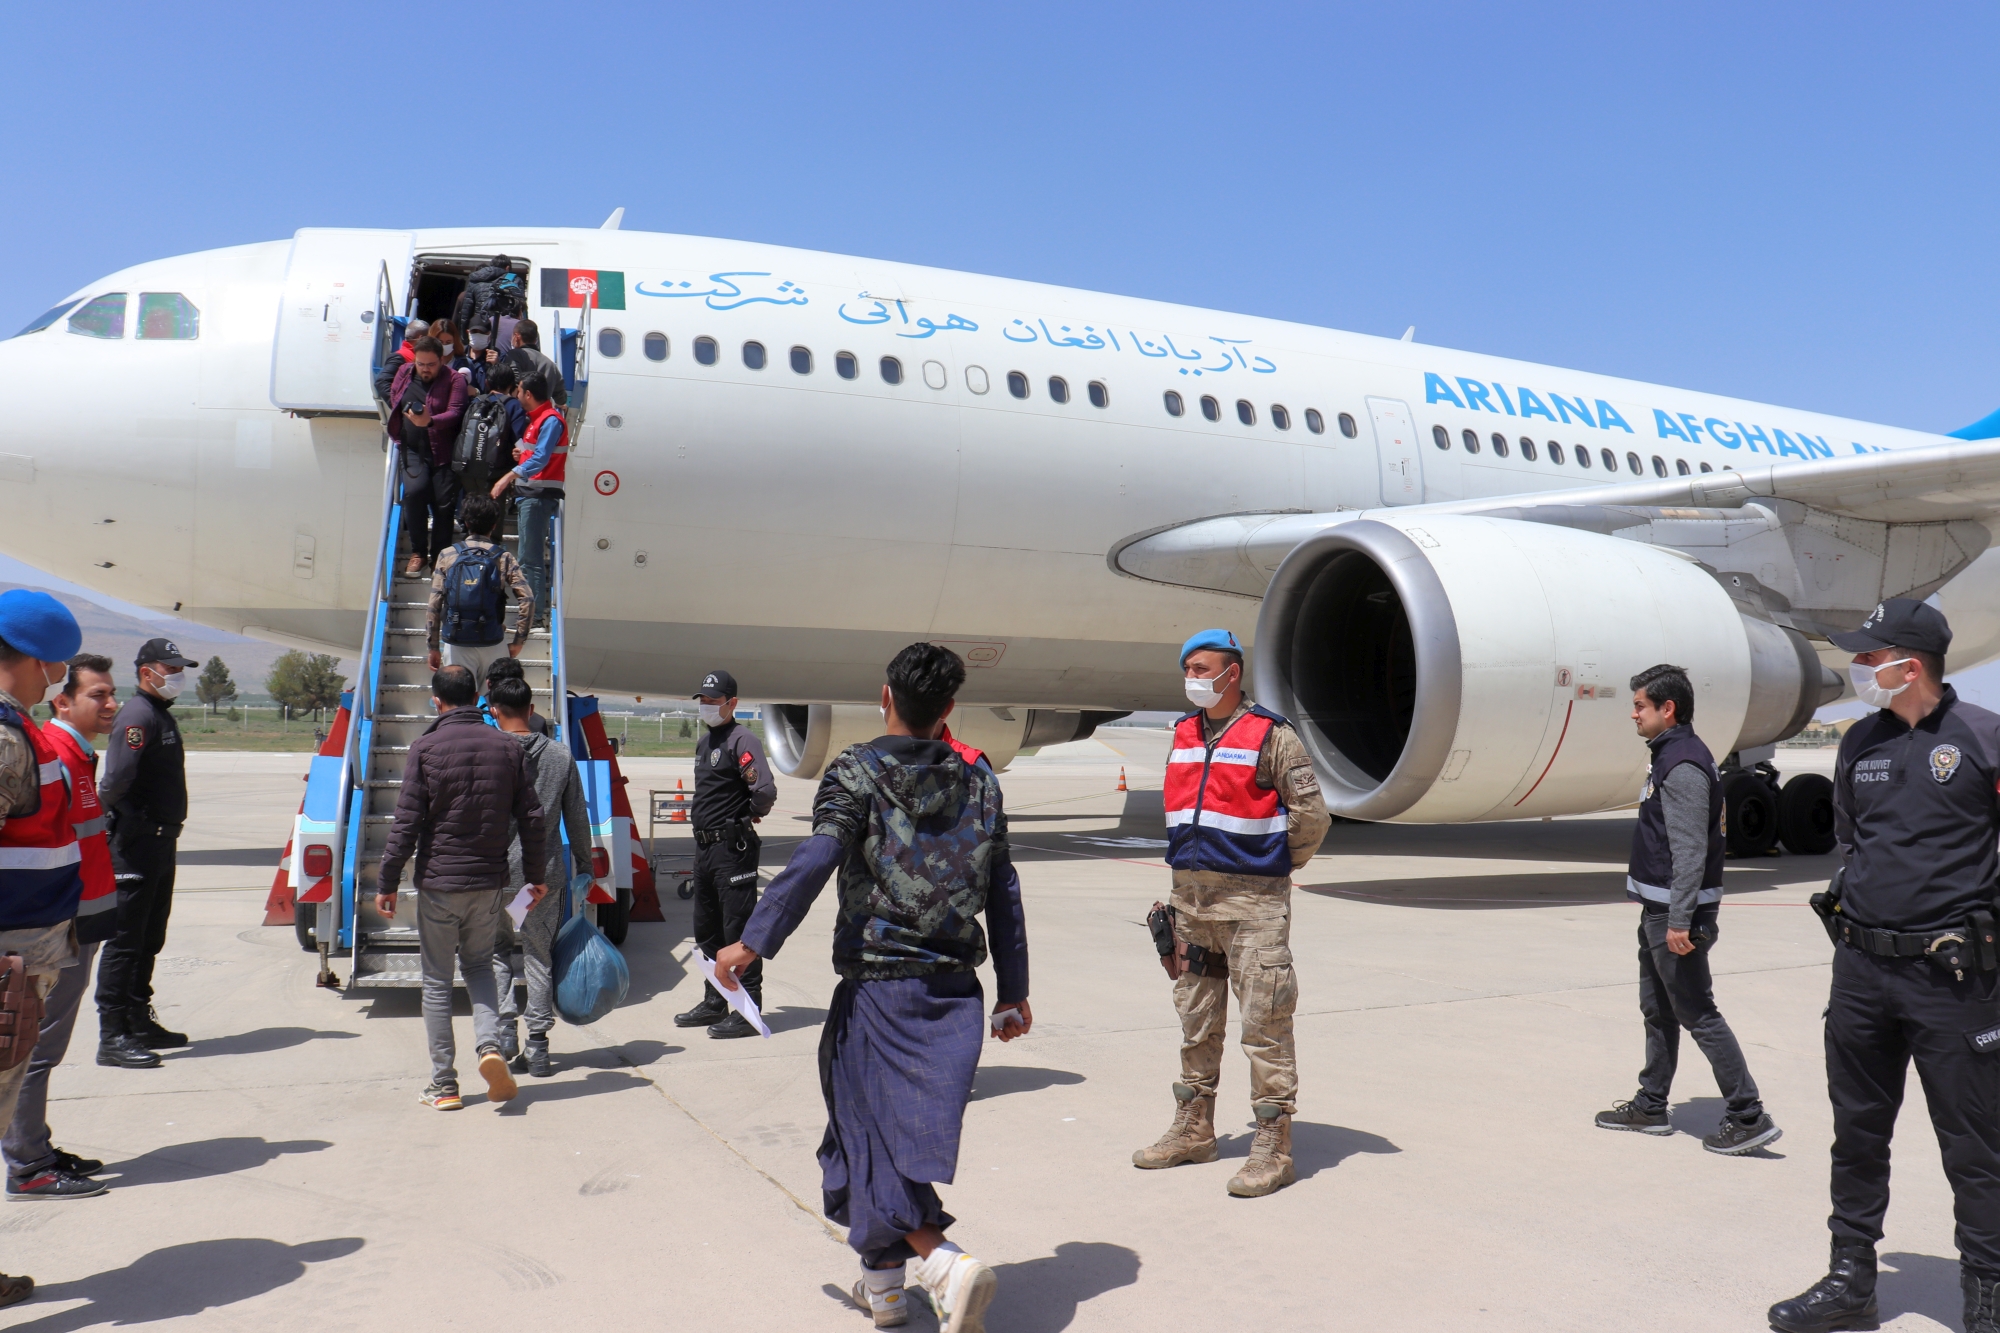 İçişleri Bakanlığı Göç İdaresi Başkanlığı’na bağlı Malatya’daki Geri Gönderme Merkezinde son 4 gün içerisinde 908 Afganistan uyruklu düzensiz göçmen uçakla ülkelerine gönderildi.